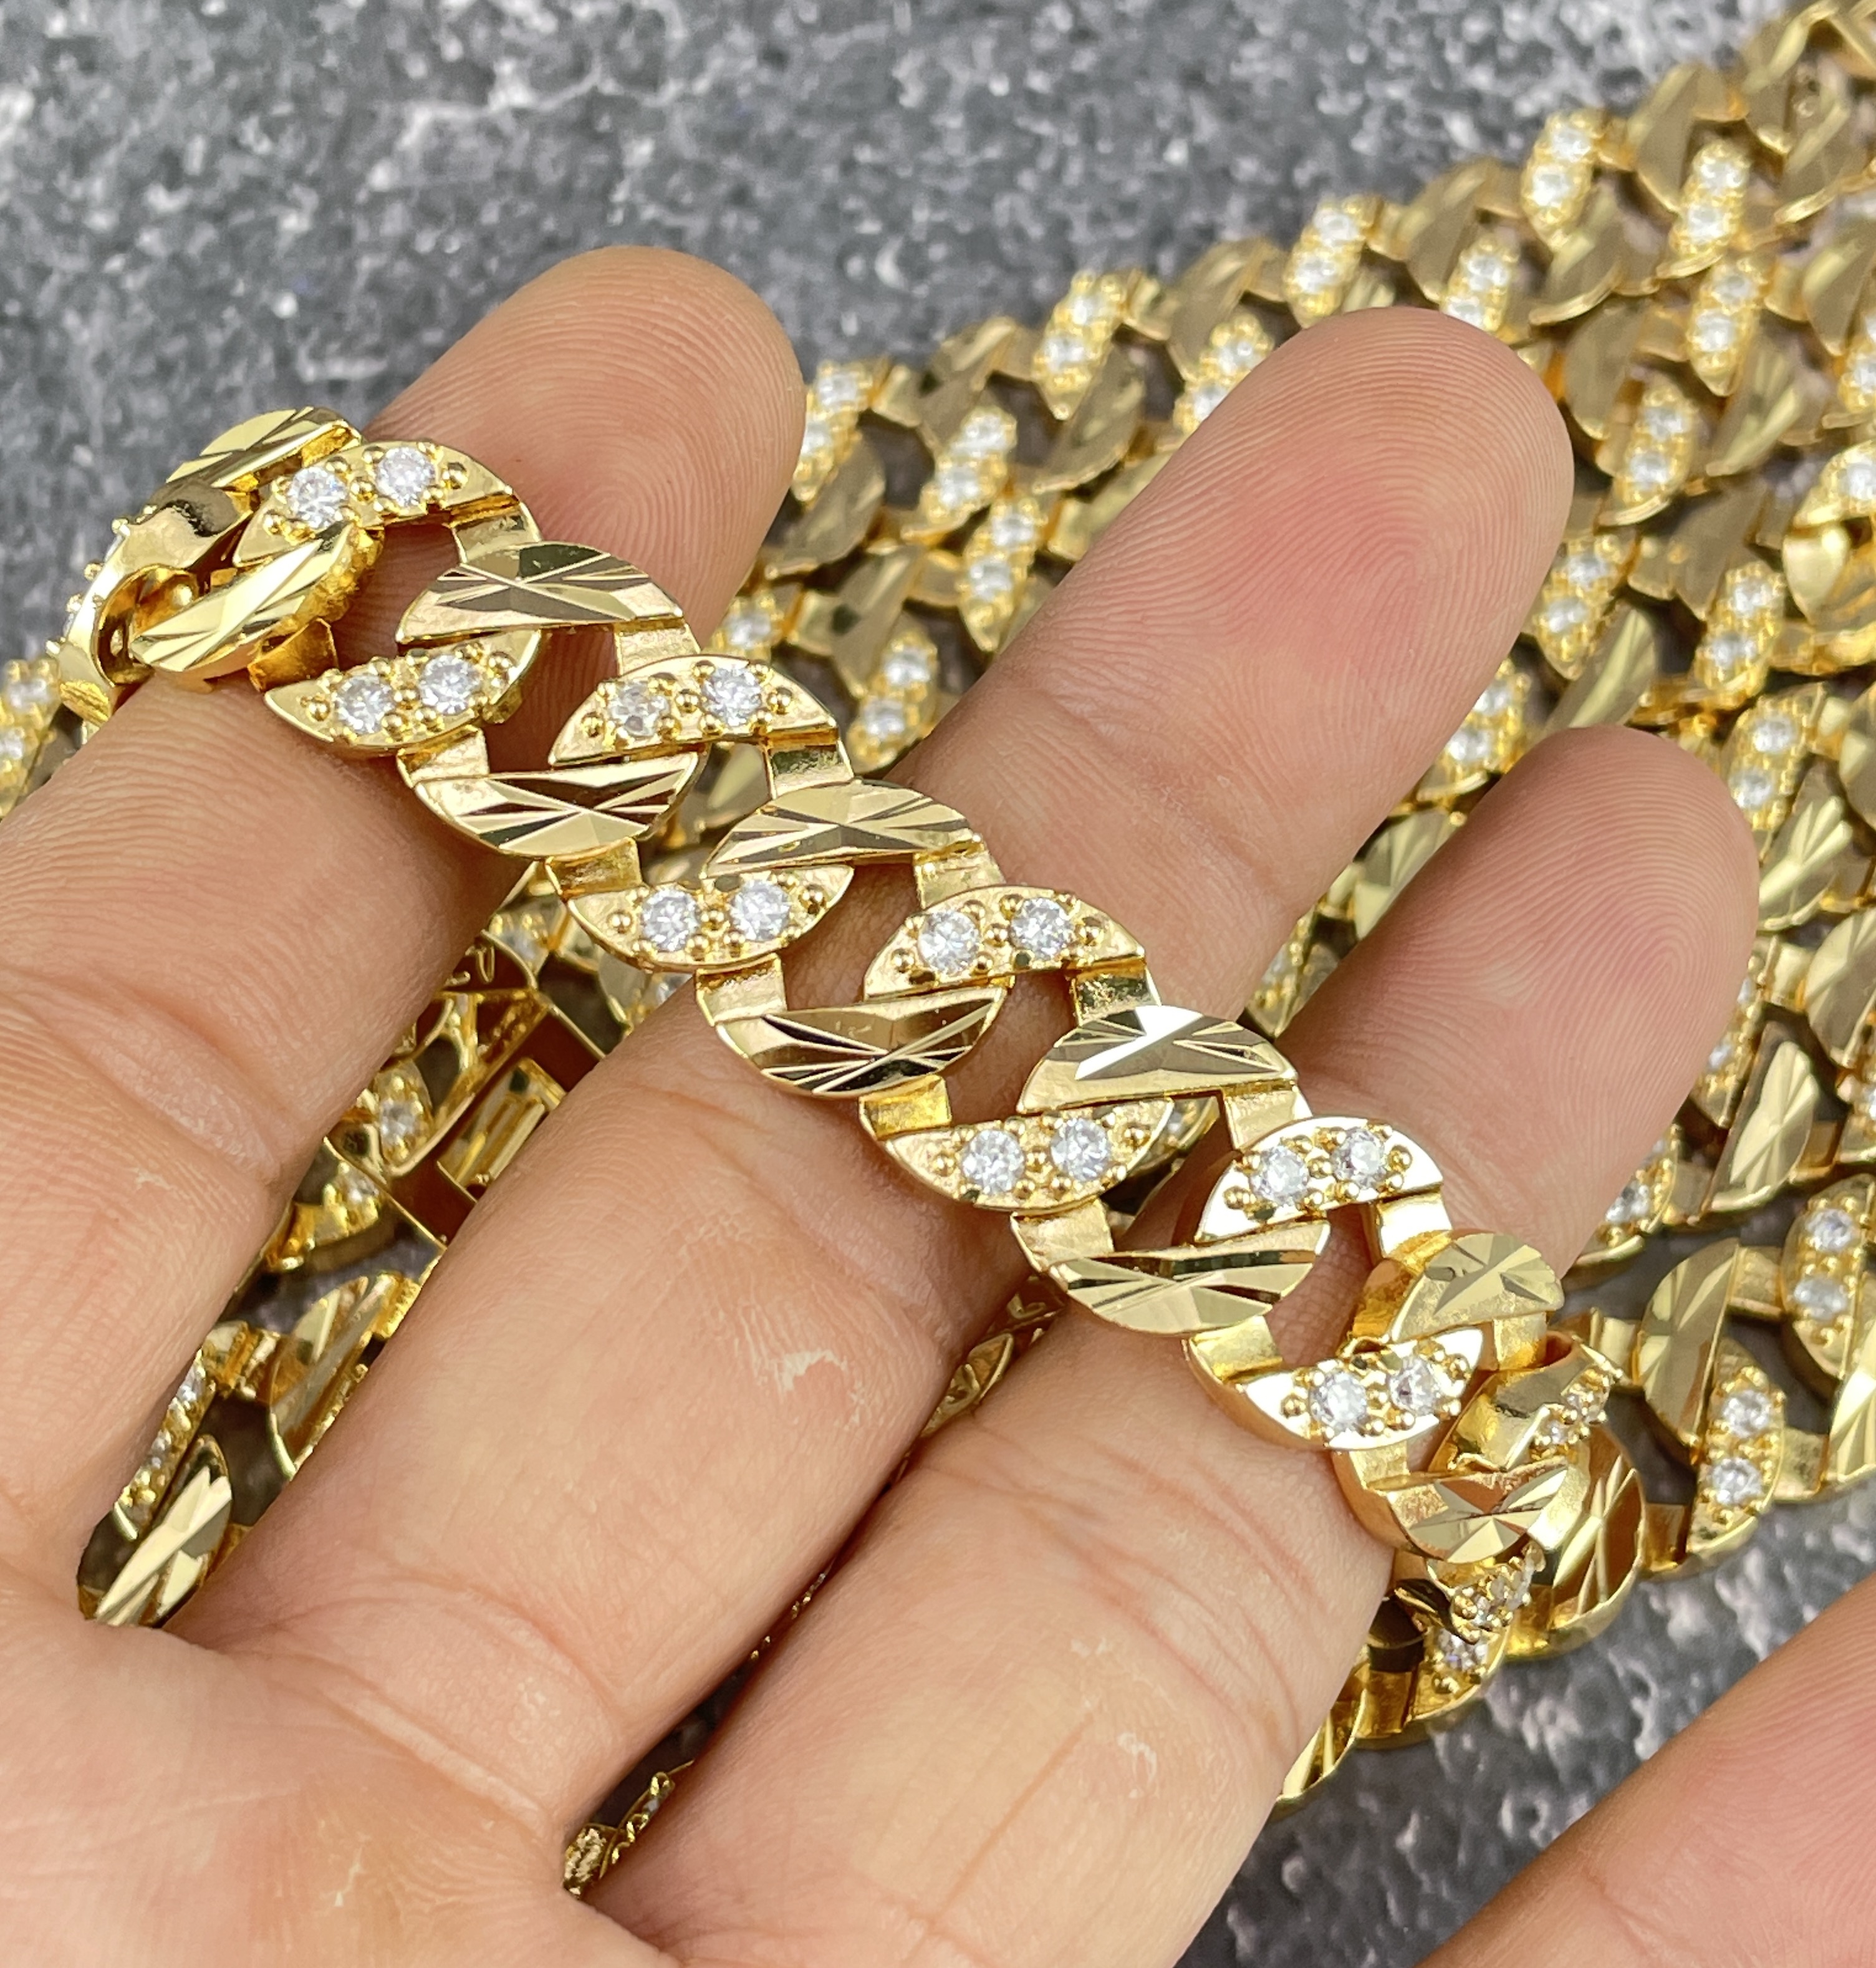 Lắc tay vàng 18k là biểu tượng của sự sang trọng và đẳng cấp. Vào năm 2024, ngành trang sức Việt Nam đã đạt được nhiều thành tựu và sản xuất những mẫu lắc tay đẹp mắt hơn bao giờ hết. Nếu bạn là người yêu thích sự đẳng cấp và muốn tìm hiểu thêm về mẫu lắc tay vàng 18k thì đừng bỏ lỡ hình ảnh này.

Translation:
An 18k gold bracelet is a symbol of luxury and class. In 2024, the Vietnamese jewelry industry has achieved significant success and produced more beautiful bracelet designs than ever before. If you love sophistication and want to learn more about 18k gold bracelets, don\'t miss out on this image.